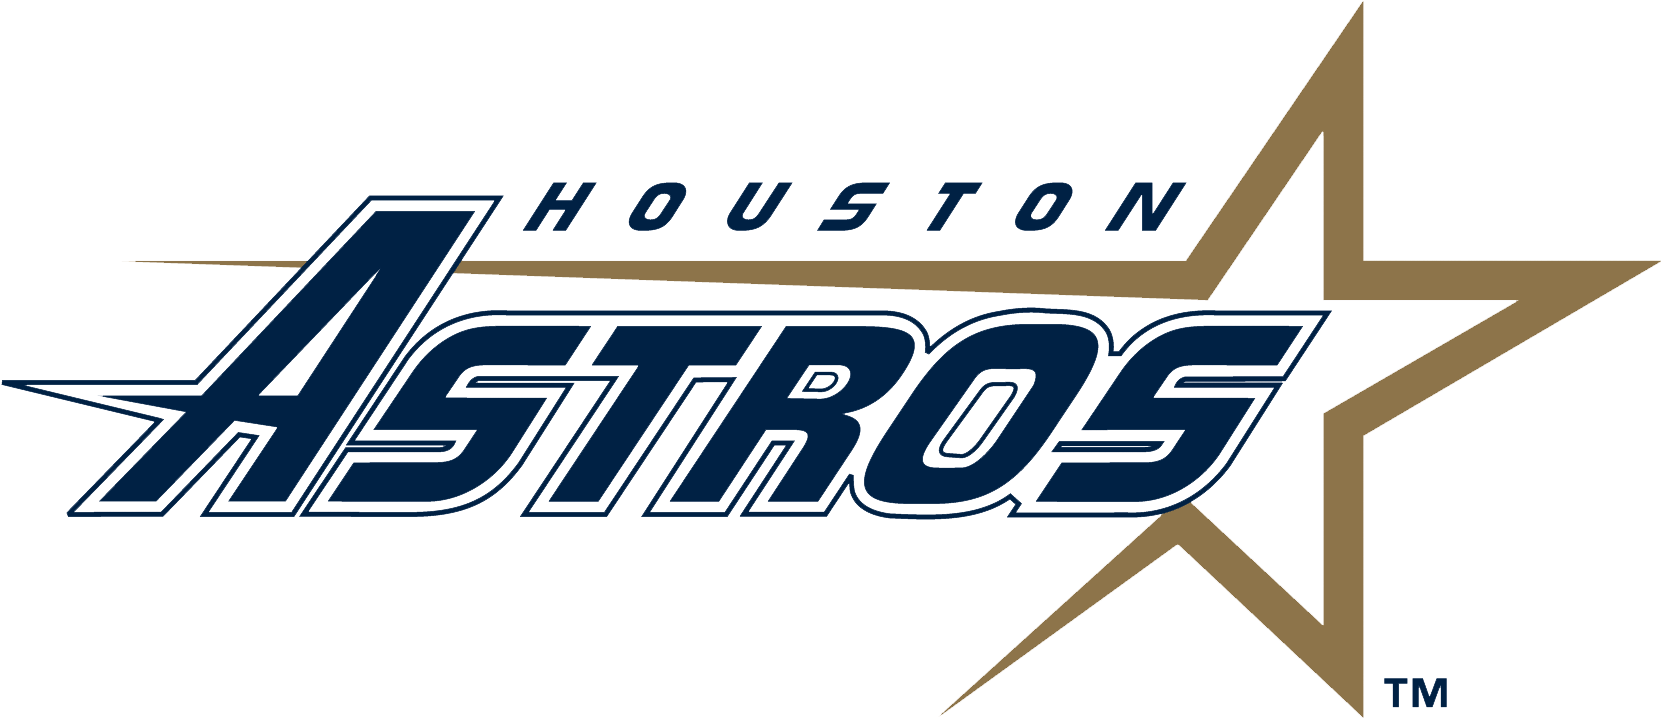 Houston Astros Logo Free PNG Image